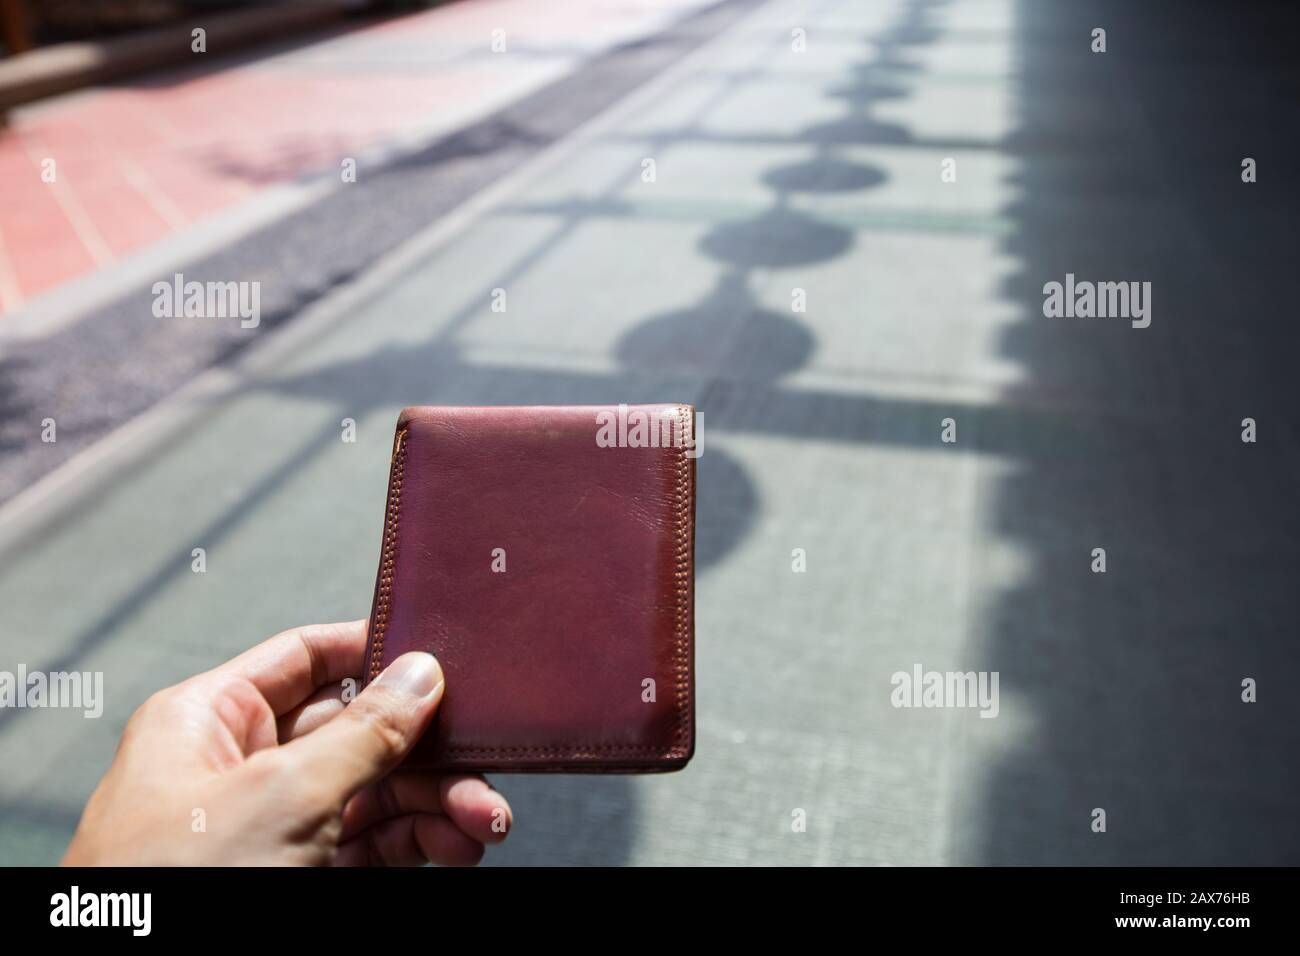 Prelevare un portafoglio lasciato sul pavimento nell'area pubblica. Foto Stock